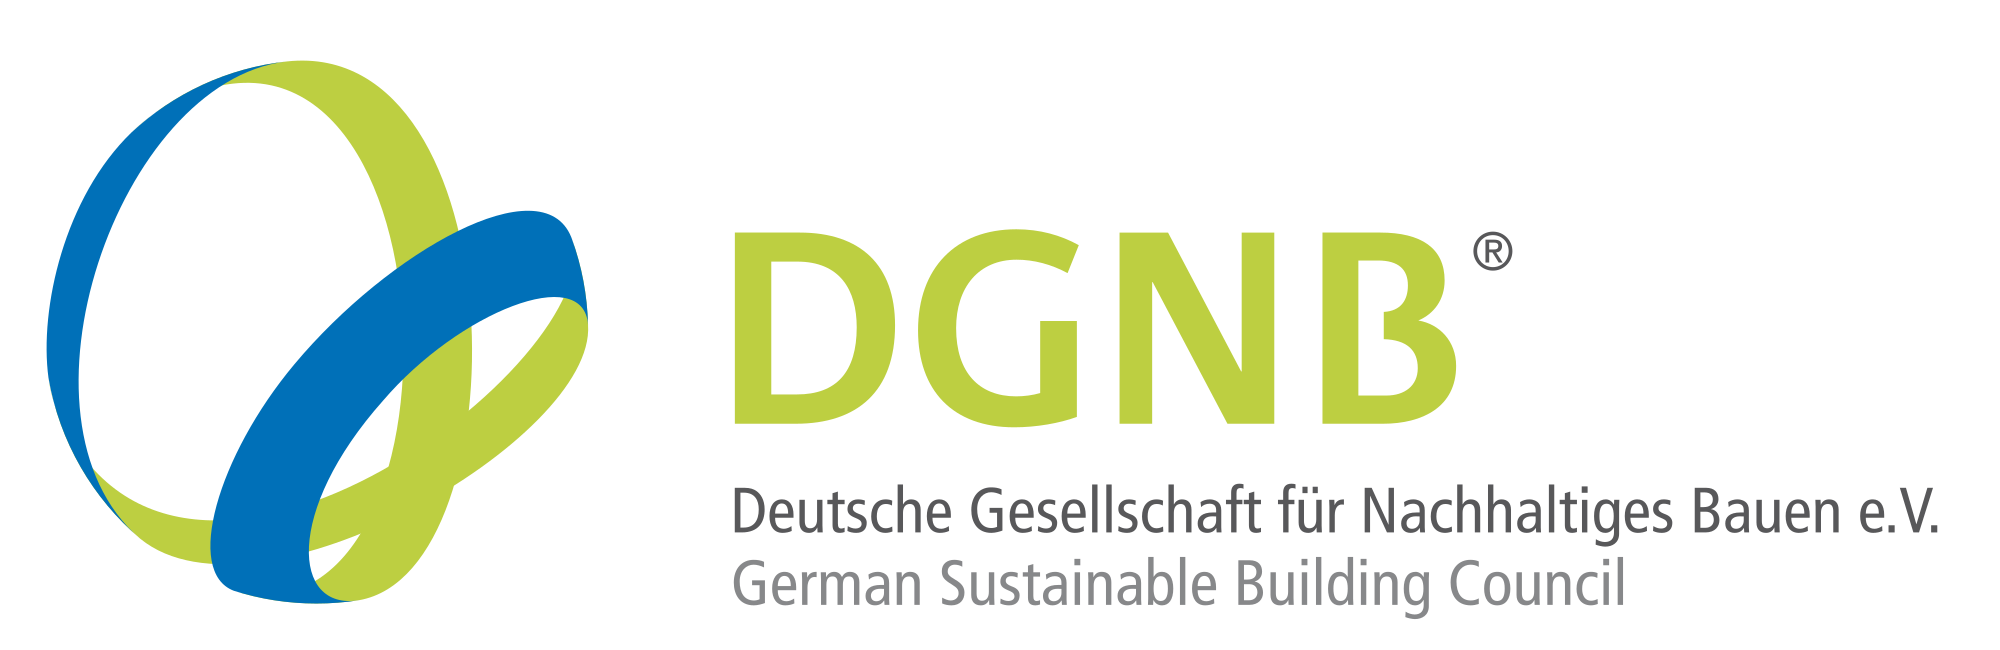 dgnb logo